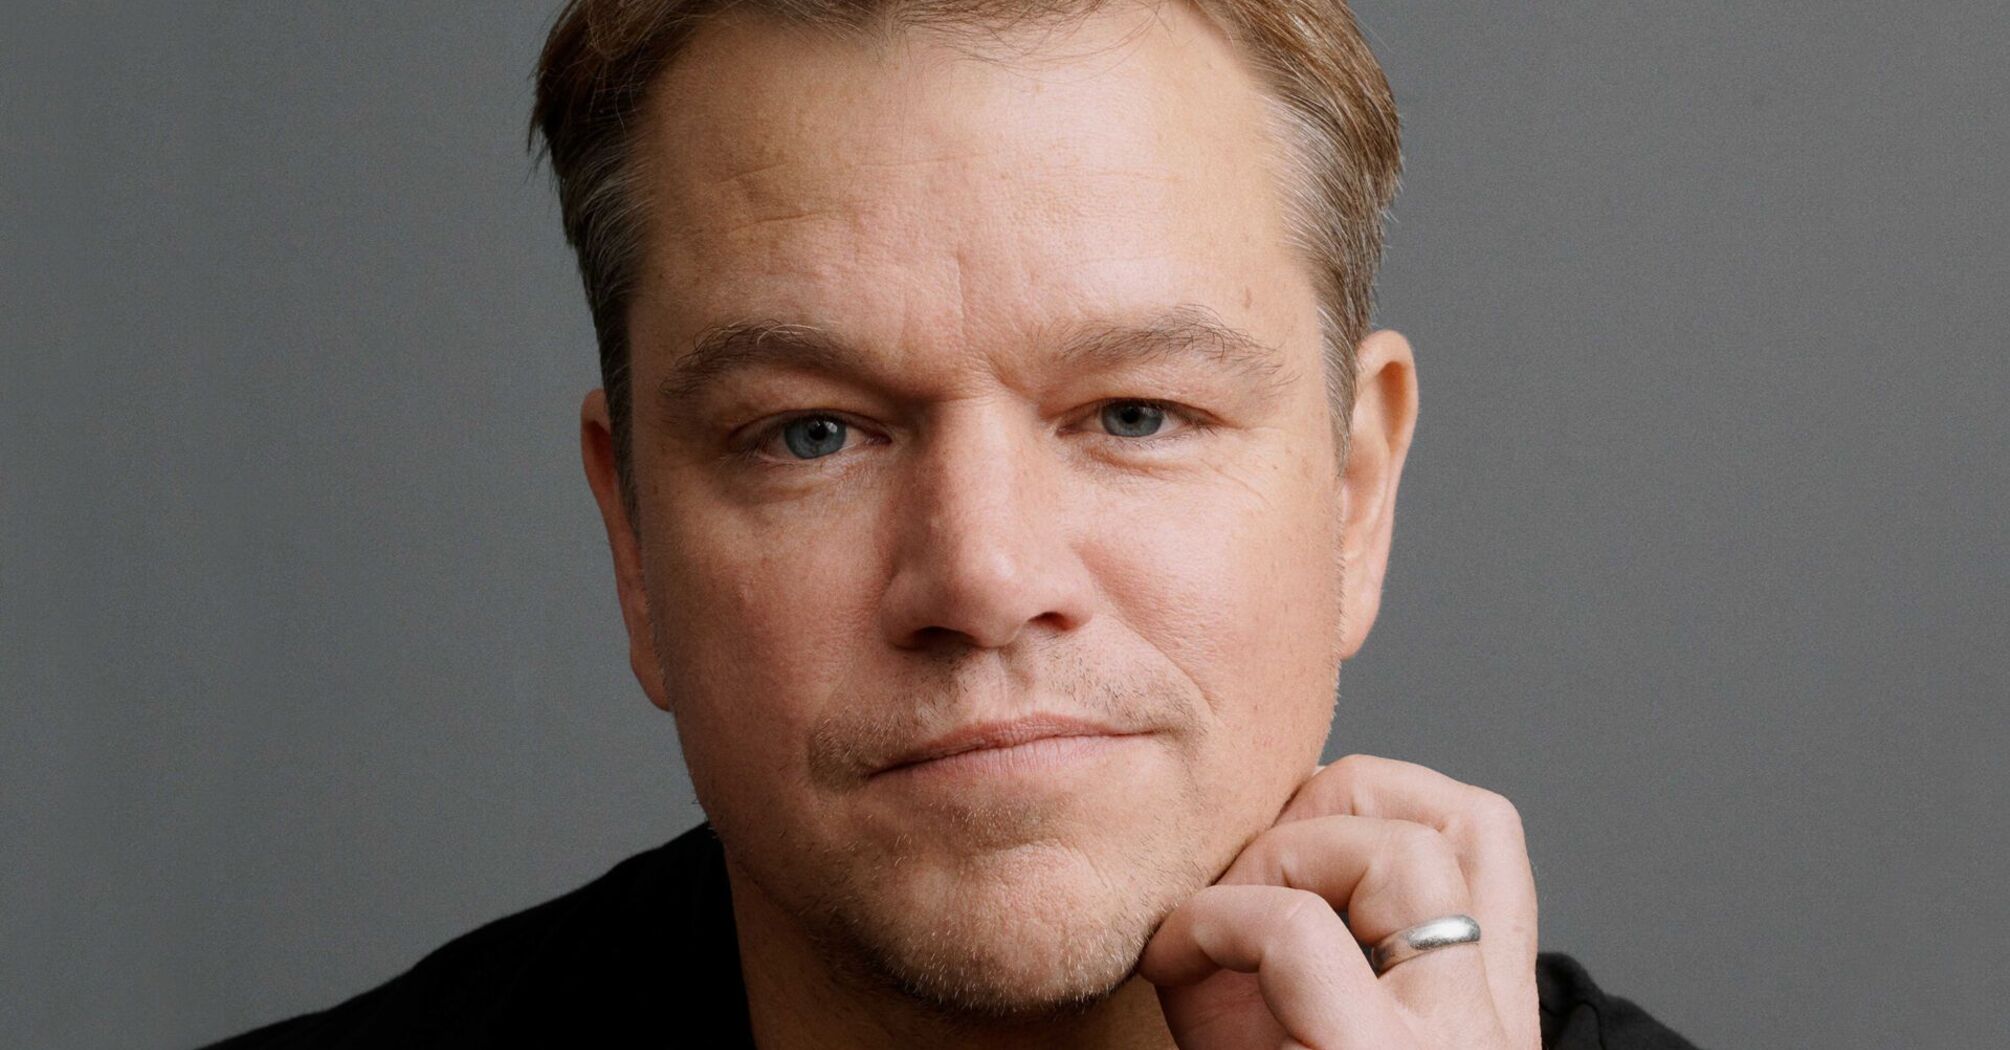 5 little-known facts about Matt Damon